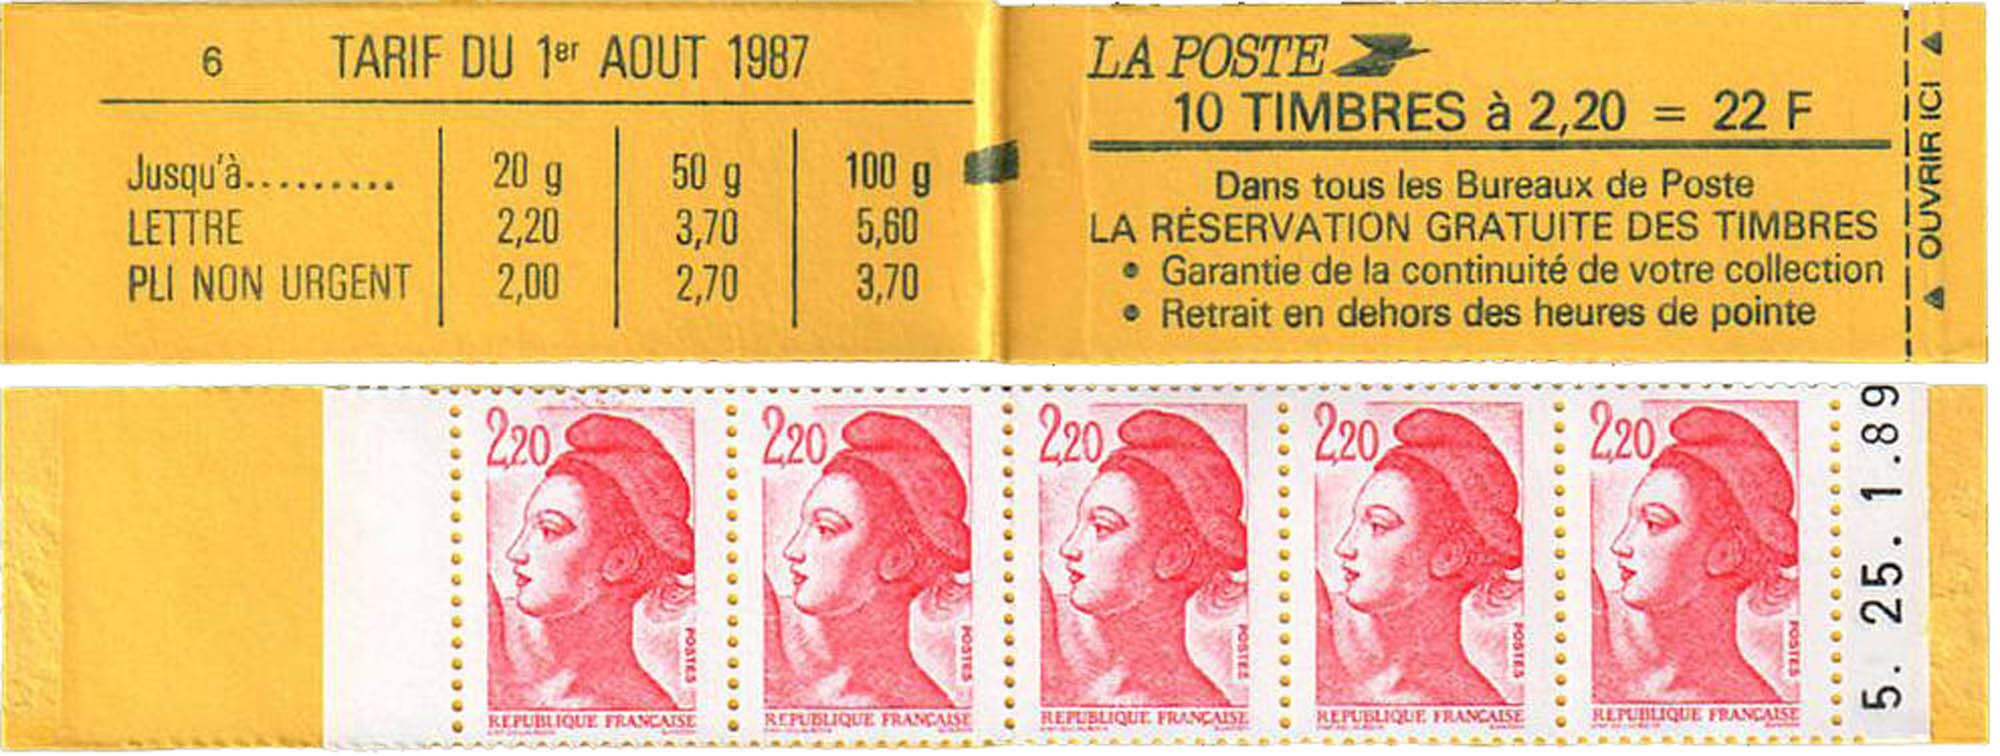 tarif du 1er aout 1987 réservation gratuite de timbres